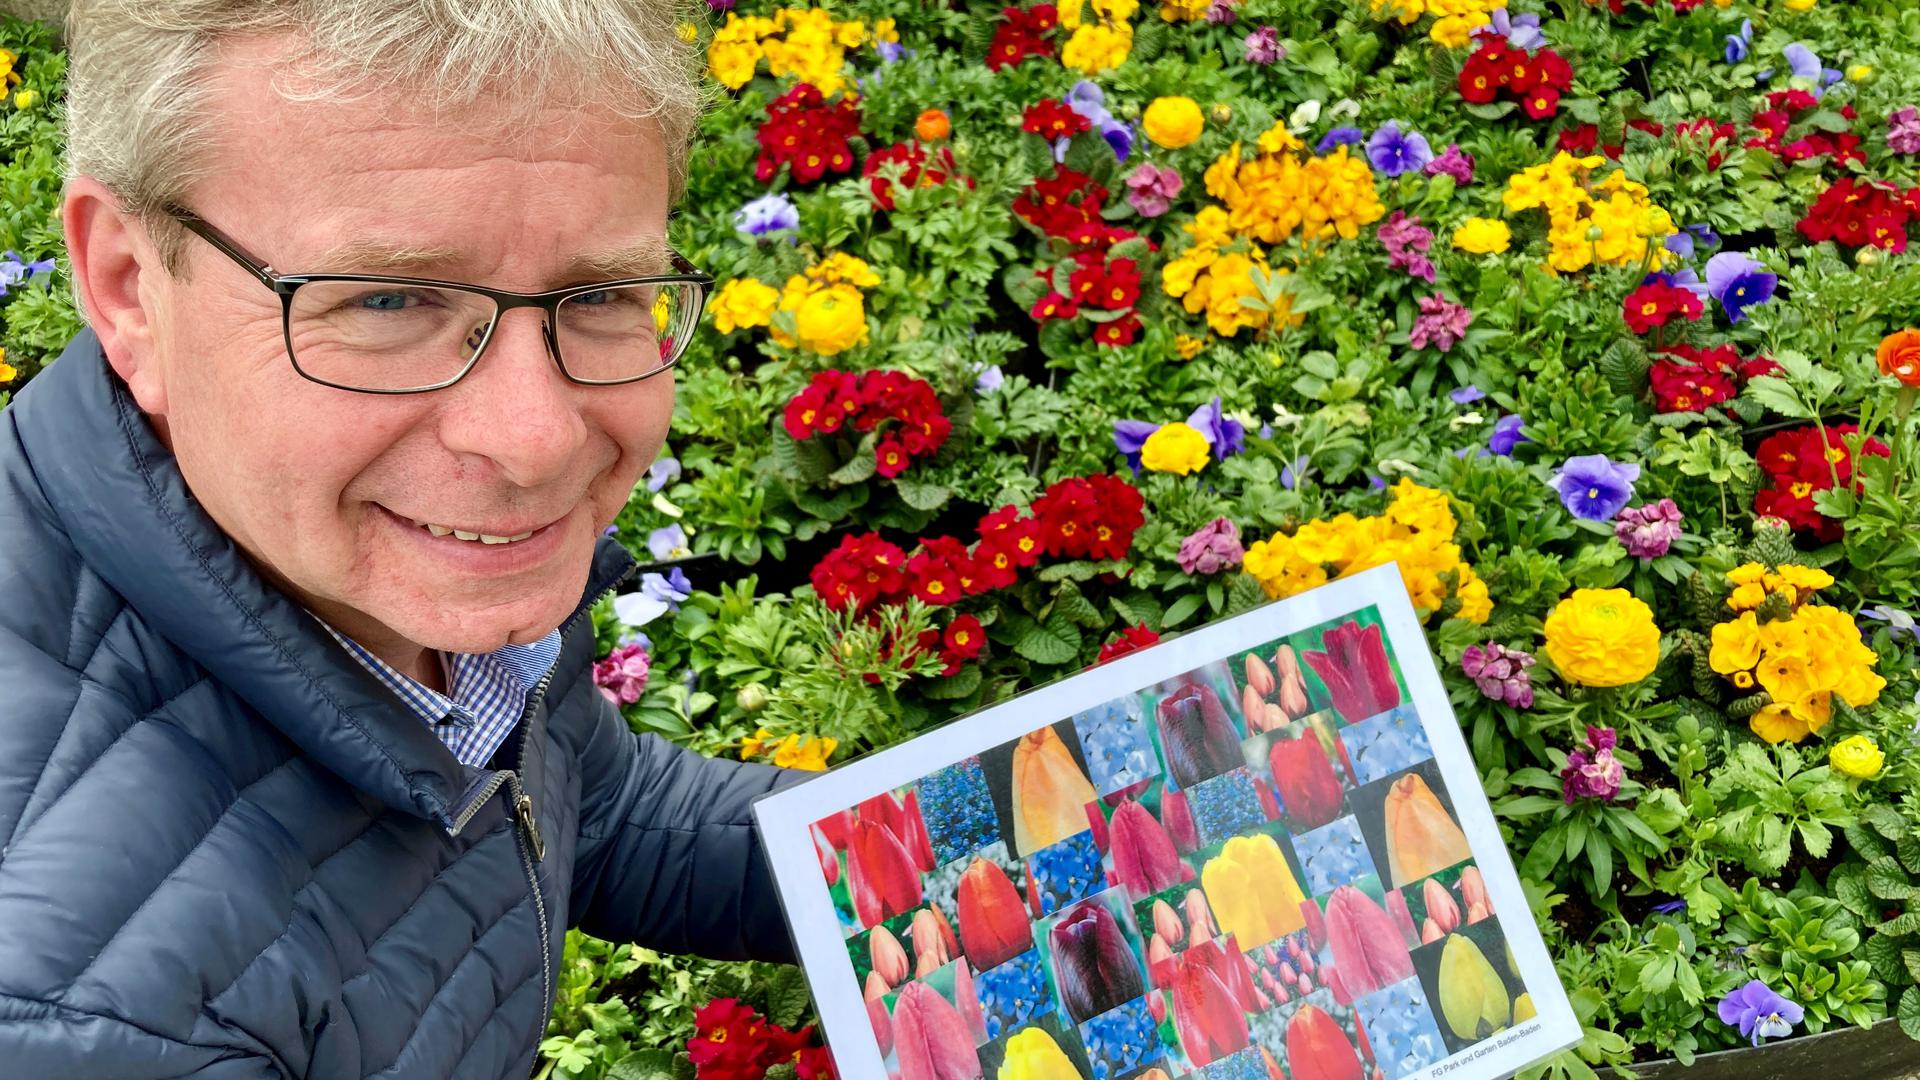 Markus Brunsing, Leiter des Gartenamts Baden-Baden, zeigt das Farbkonzept für den Frühjahrsflor zu Osterfestspielen.